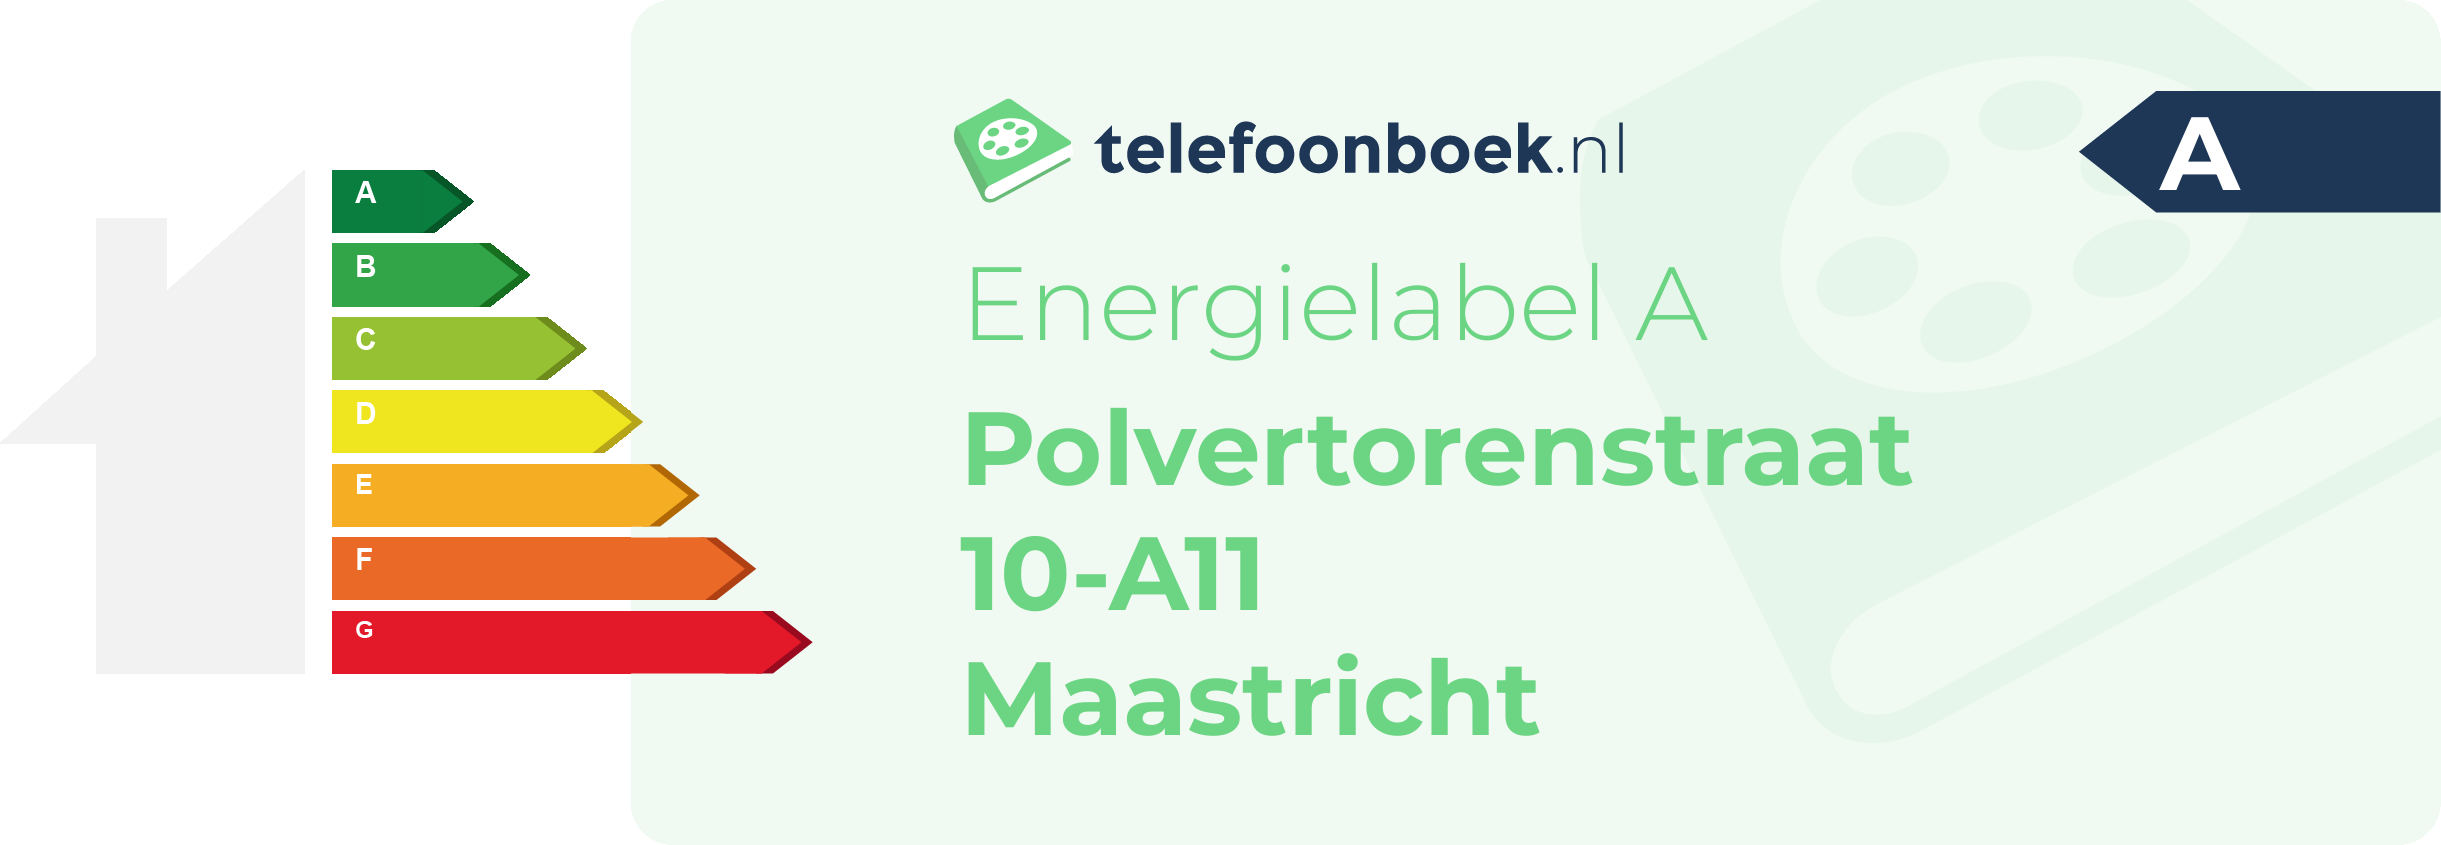 Energielabel Polvertorenstraat 10-A11 Maastricht